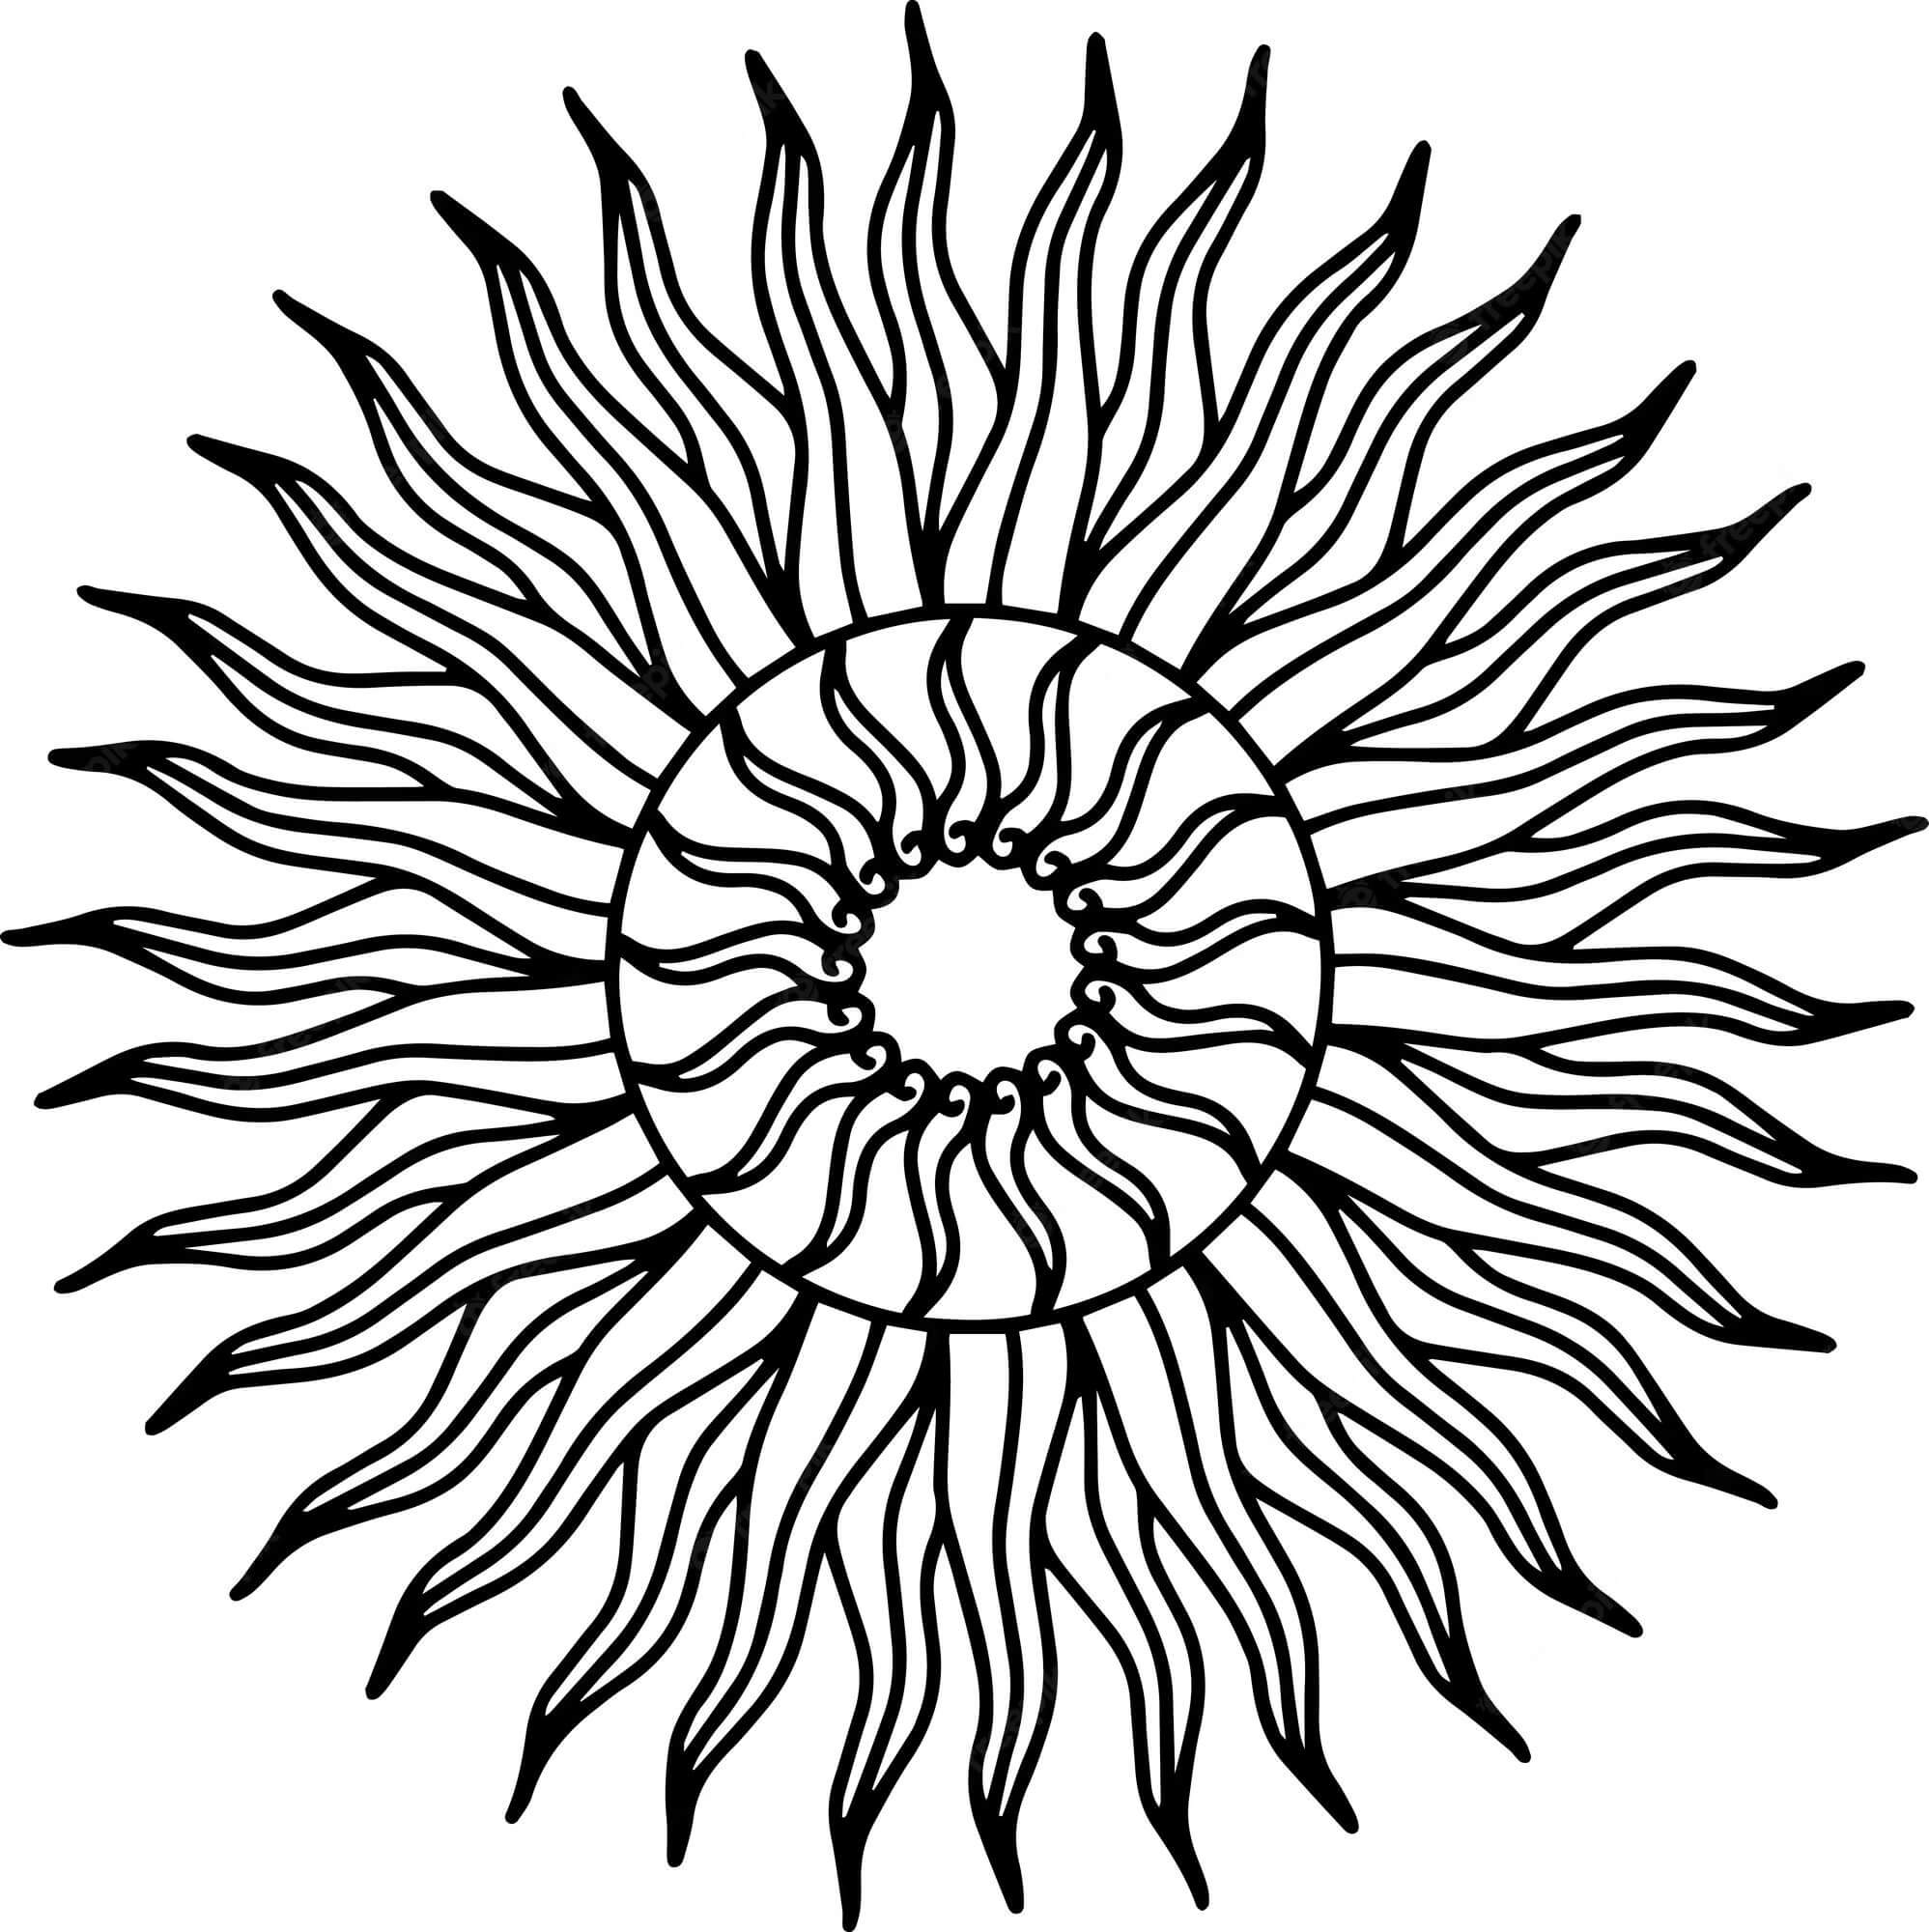 Mandala Sun Coloring Page - Sheet 8 Mandalas